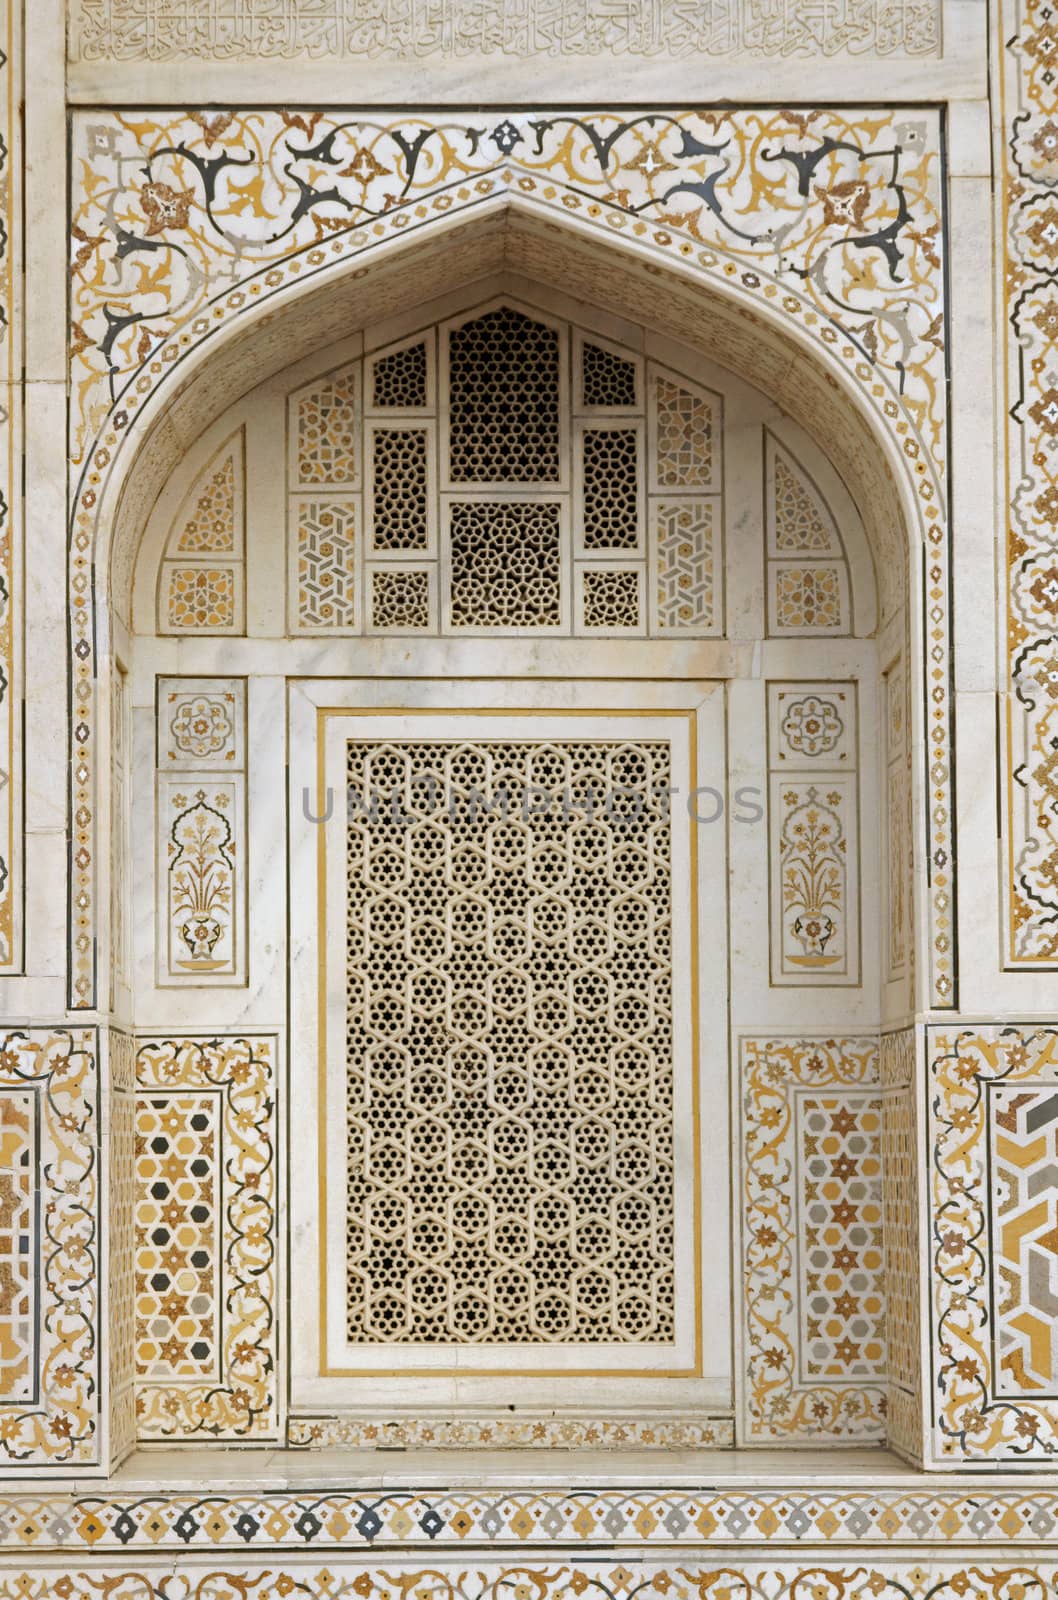 Islamic Architecture by JeremyRichards